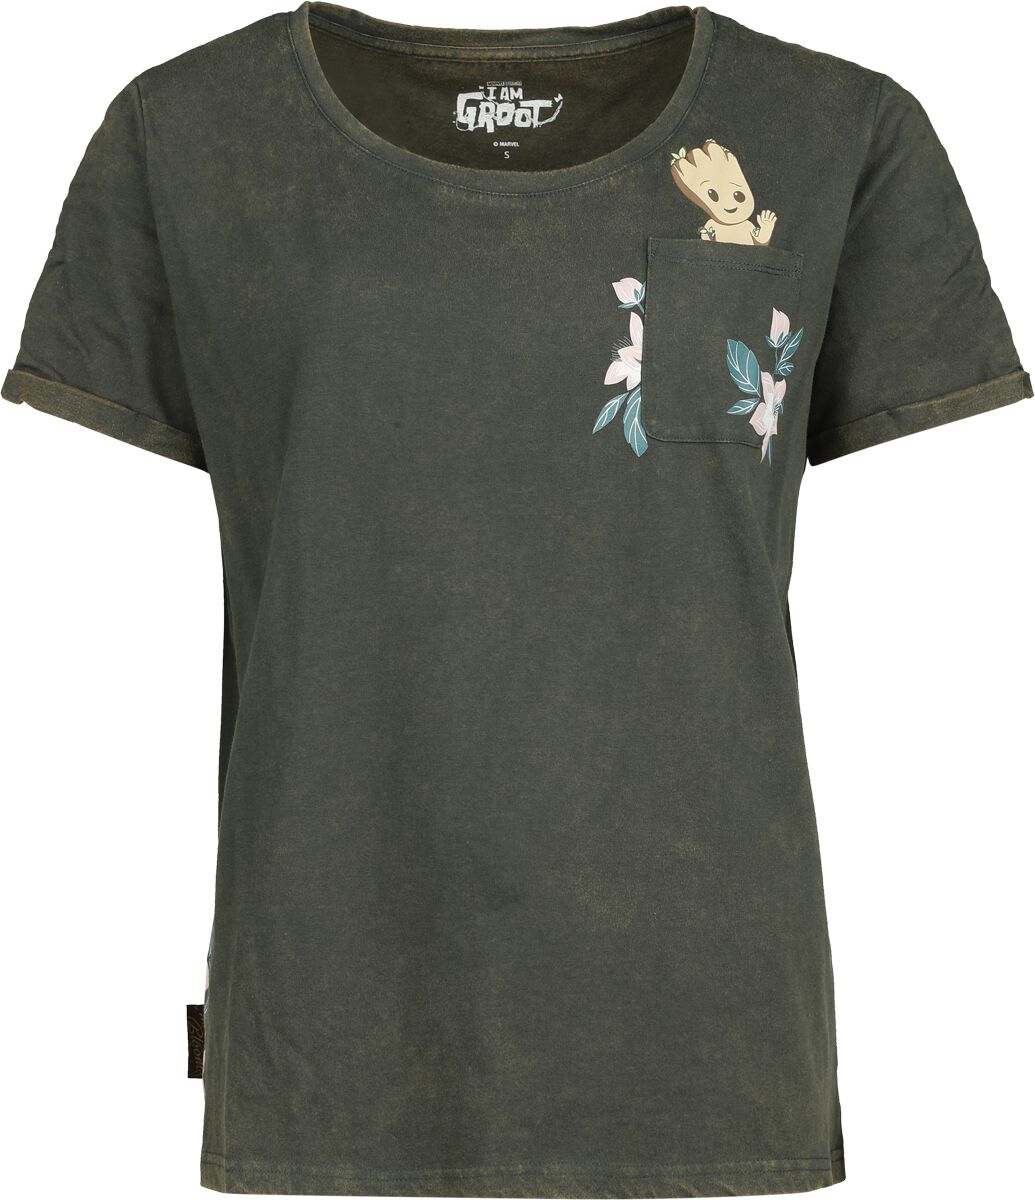 Guardians Of The Galaxy T-Shirt - Groot Floral - S bis XXL - für Damen - Größe XXL - dunkelgrün  - EMP exklusives Merchandise!